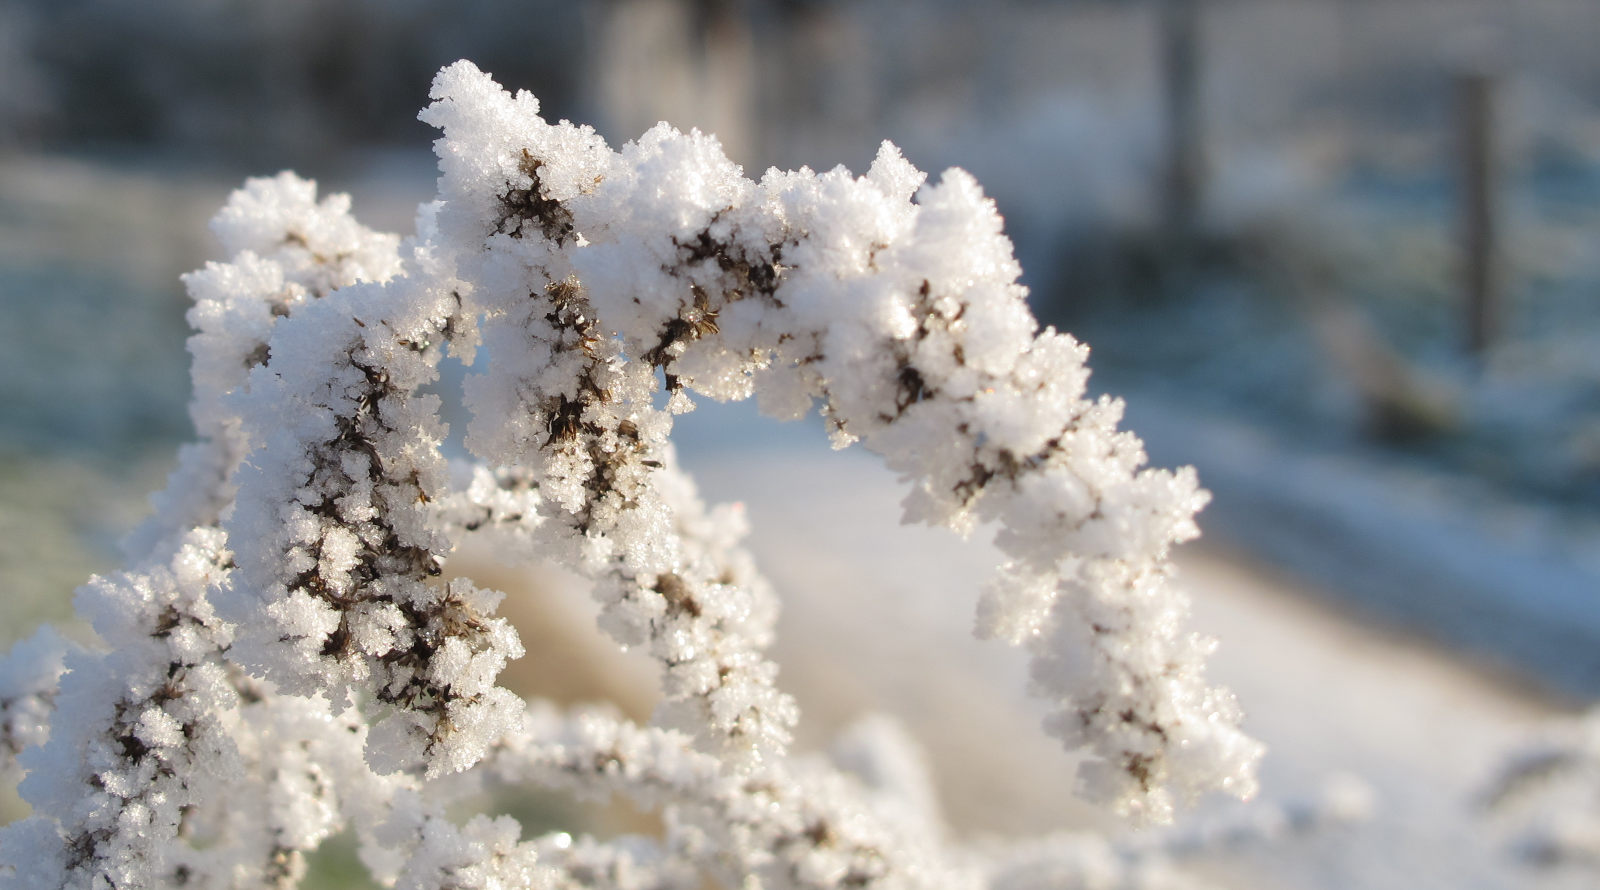 Foto: Myriaden von Eiskristallen an einem Pflanzentrieb in der Sonne